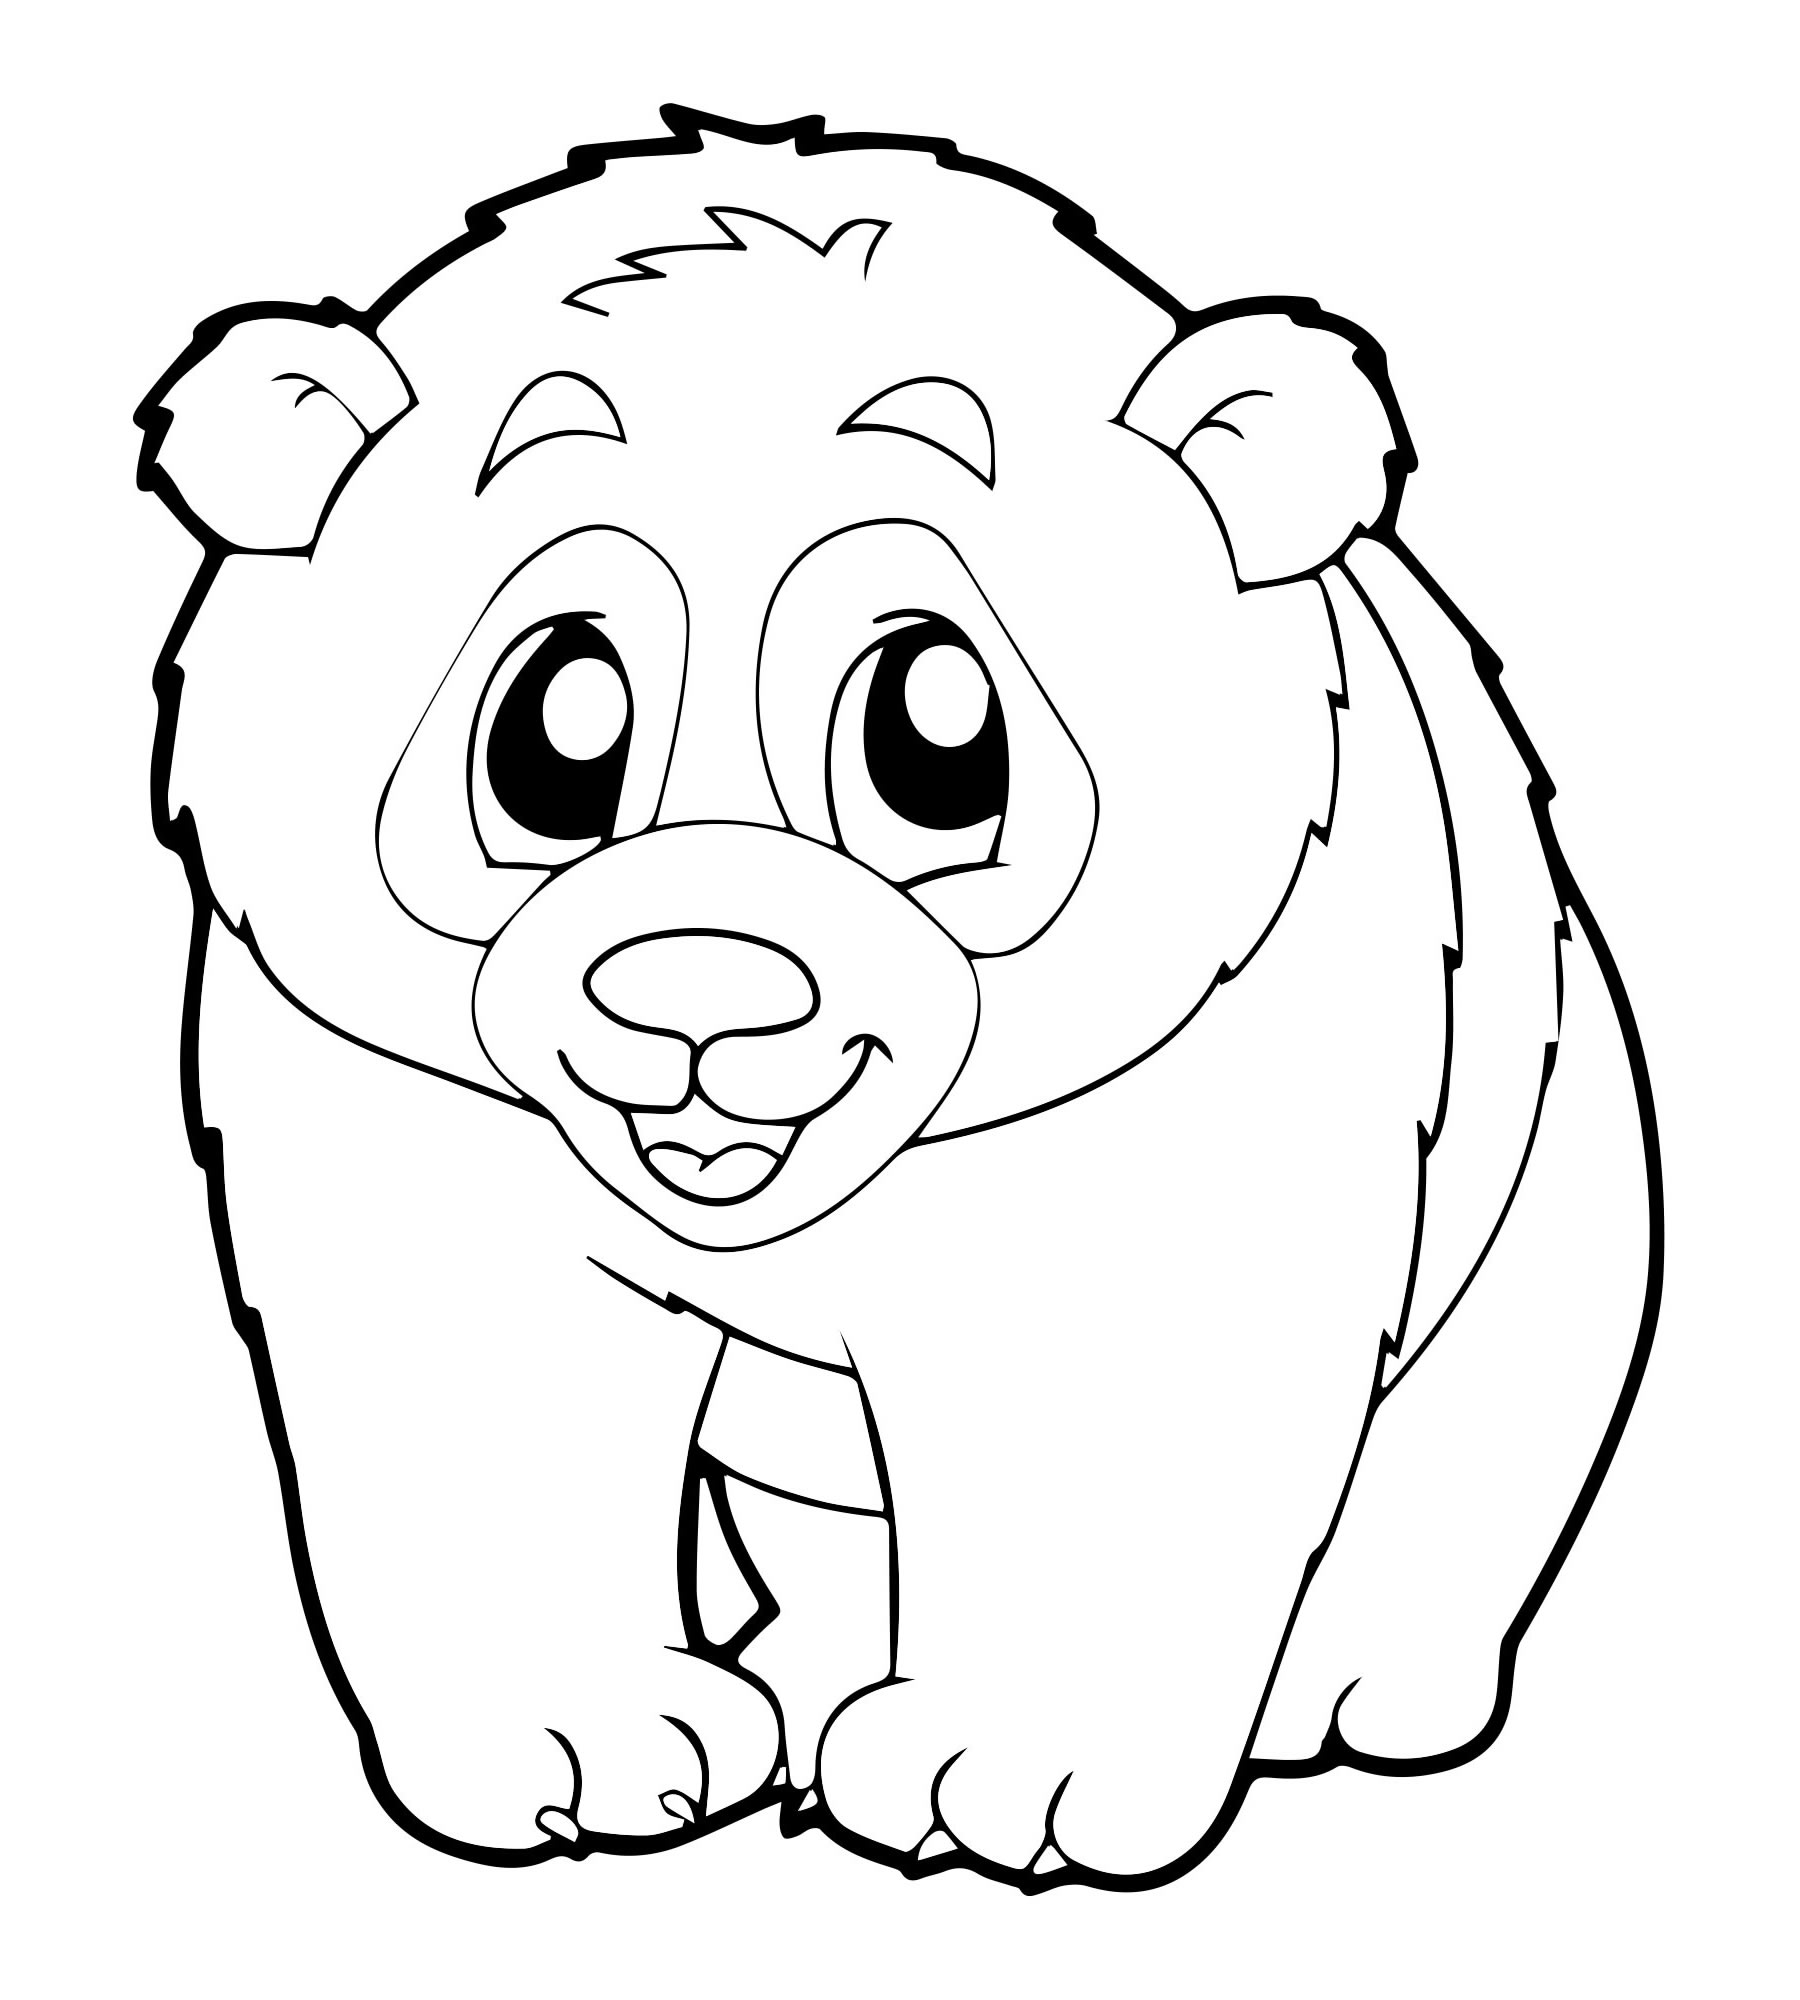 Китайская панда раскраска для детей